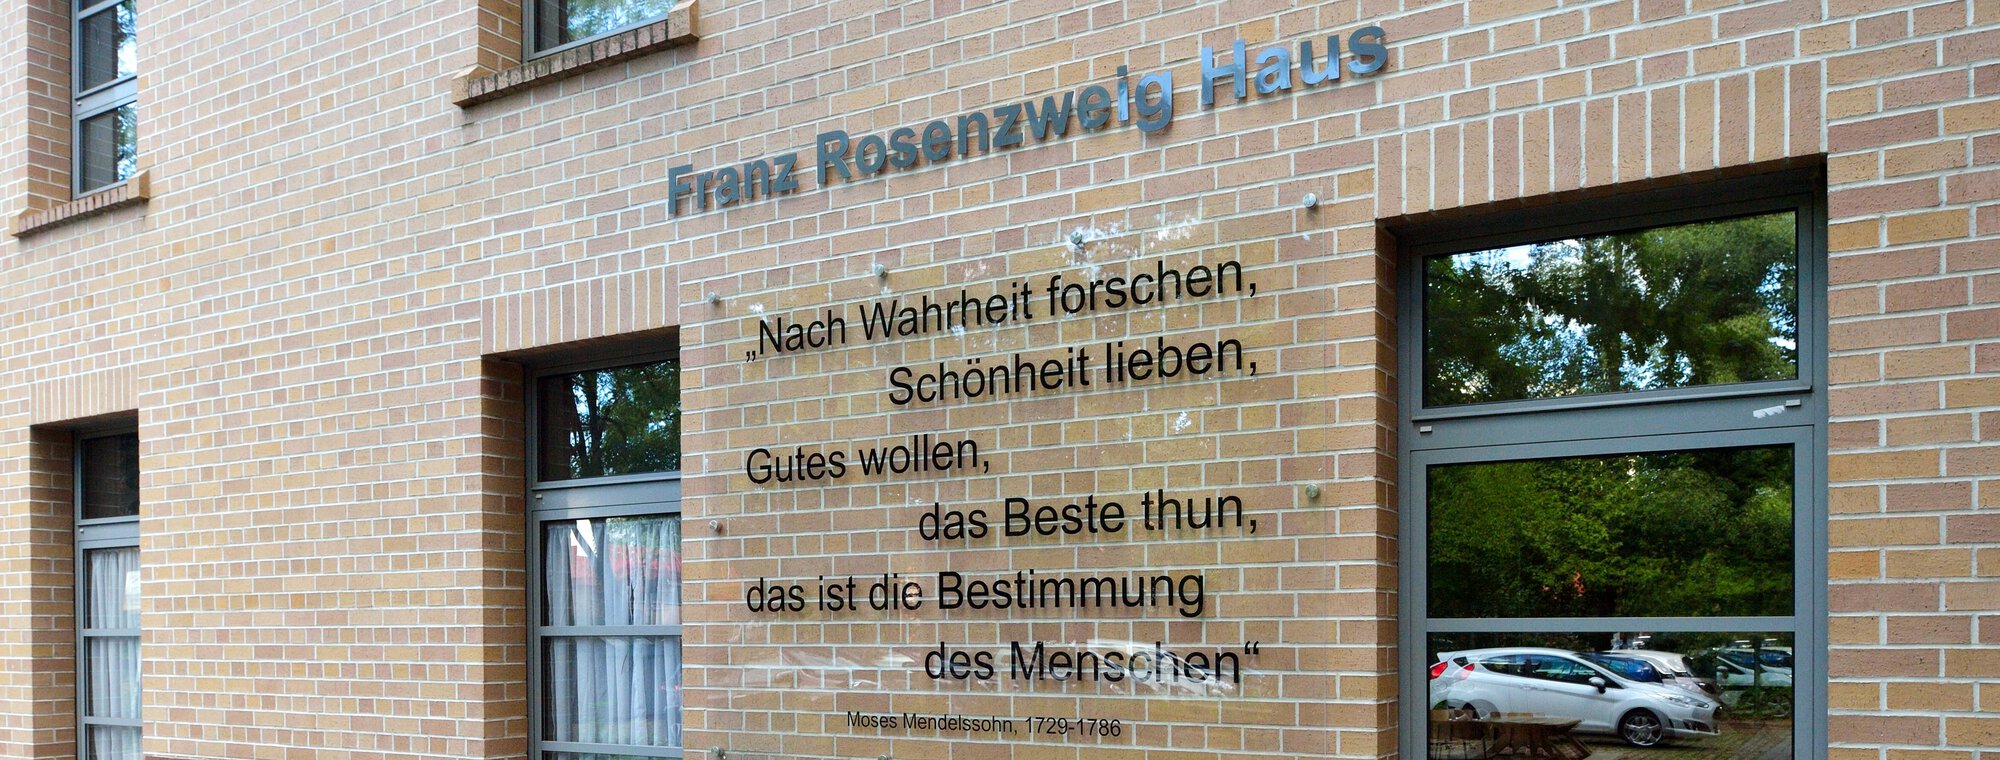 Außenansicht des Franz Rosenzweig Hauses in Freiburg